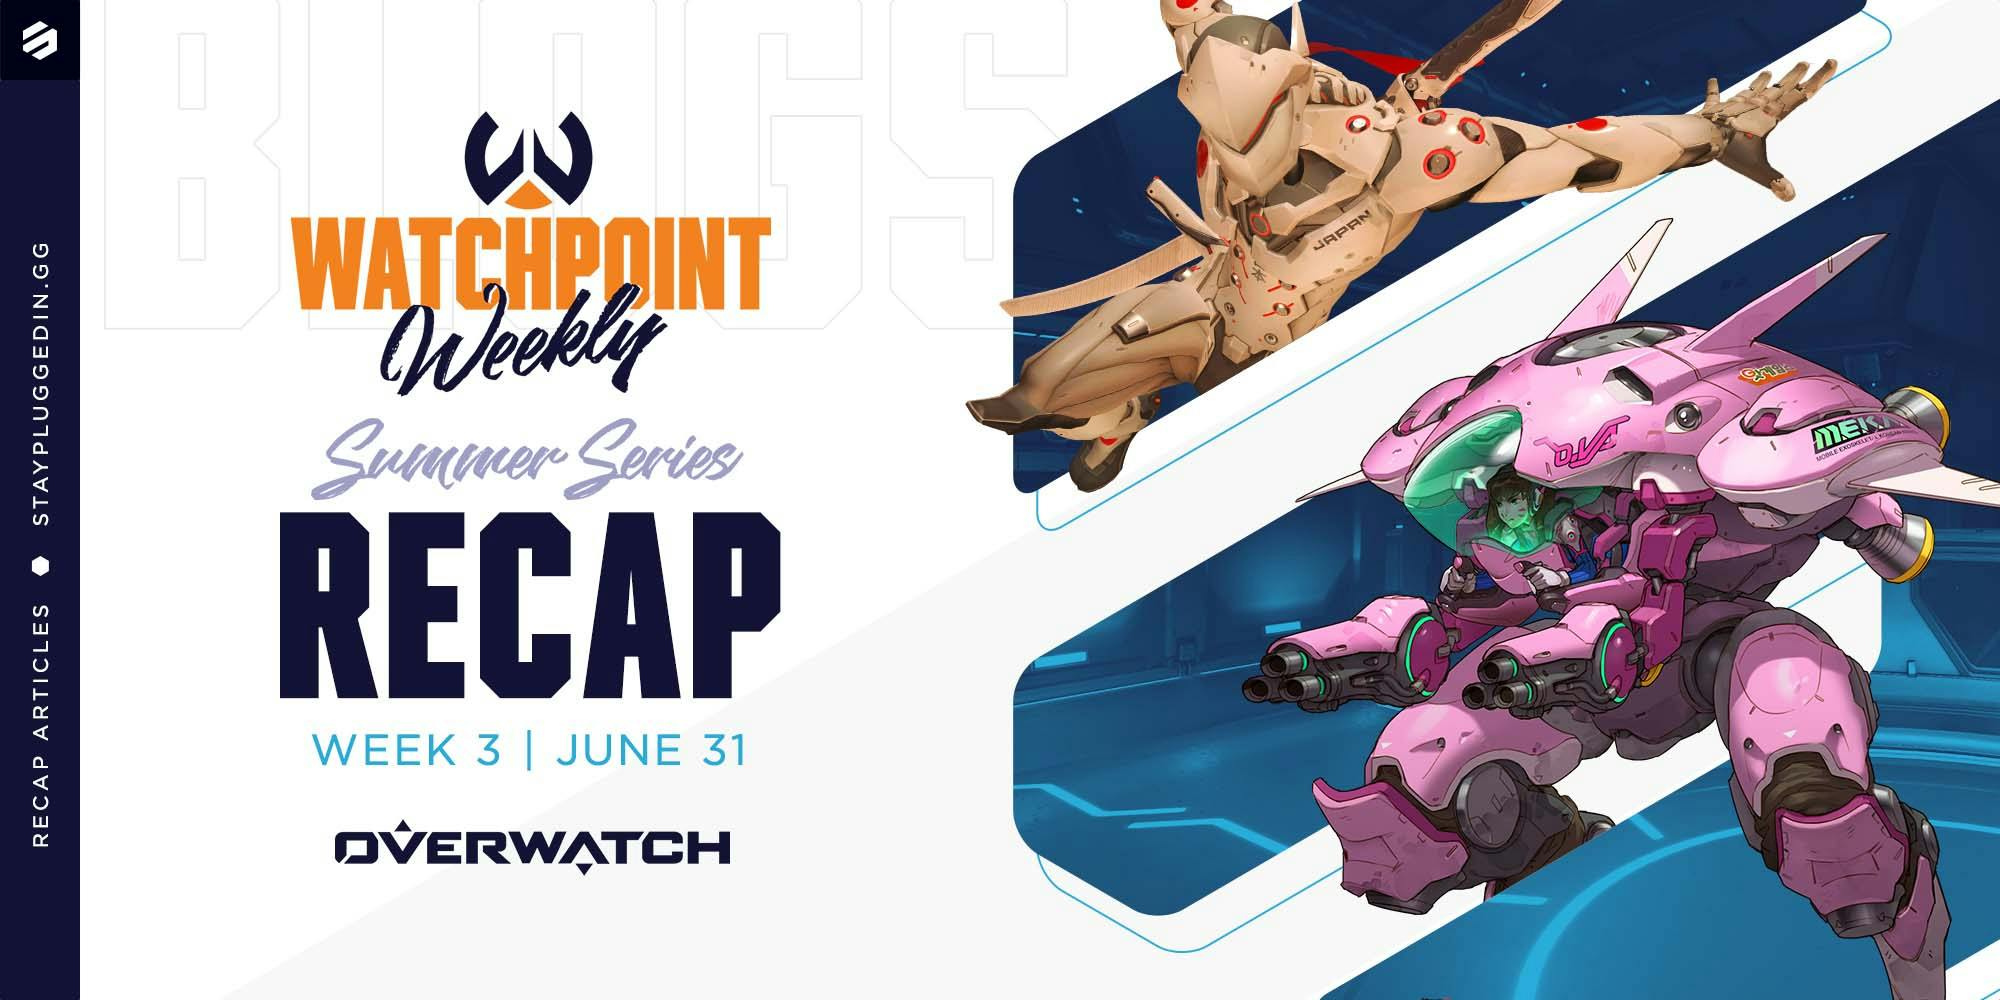 Watchpoint Weekly | Summer Series Week 3 Recap